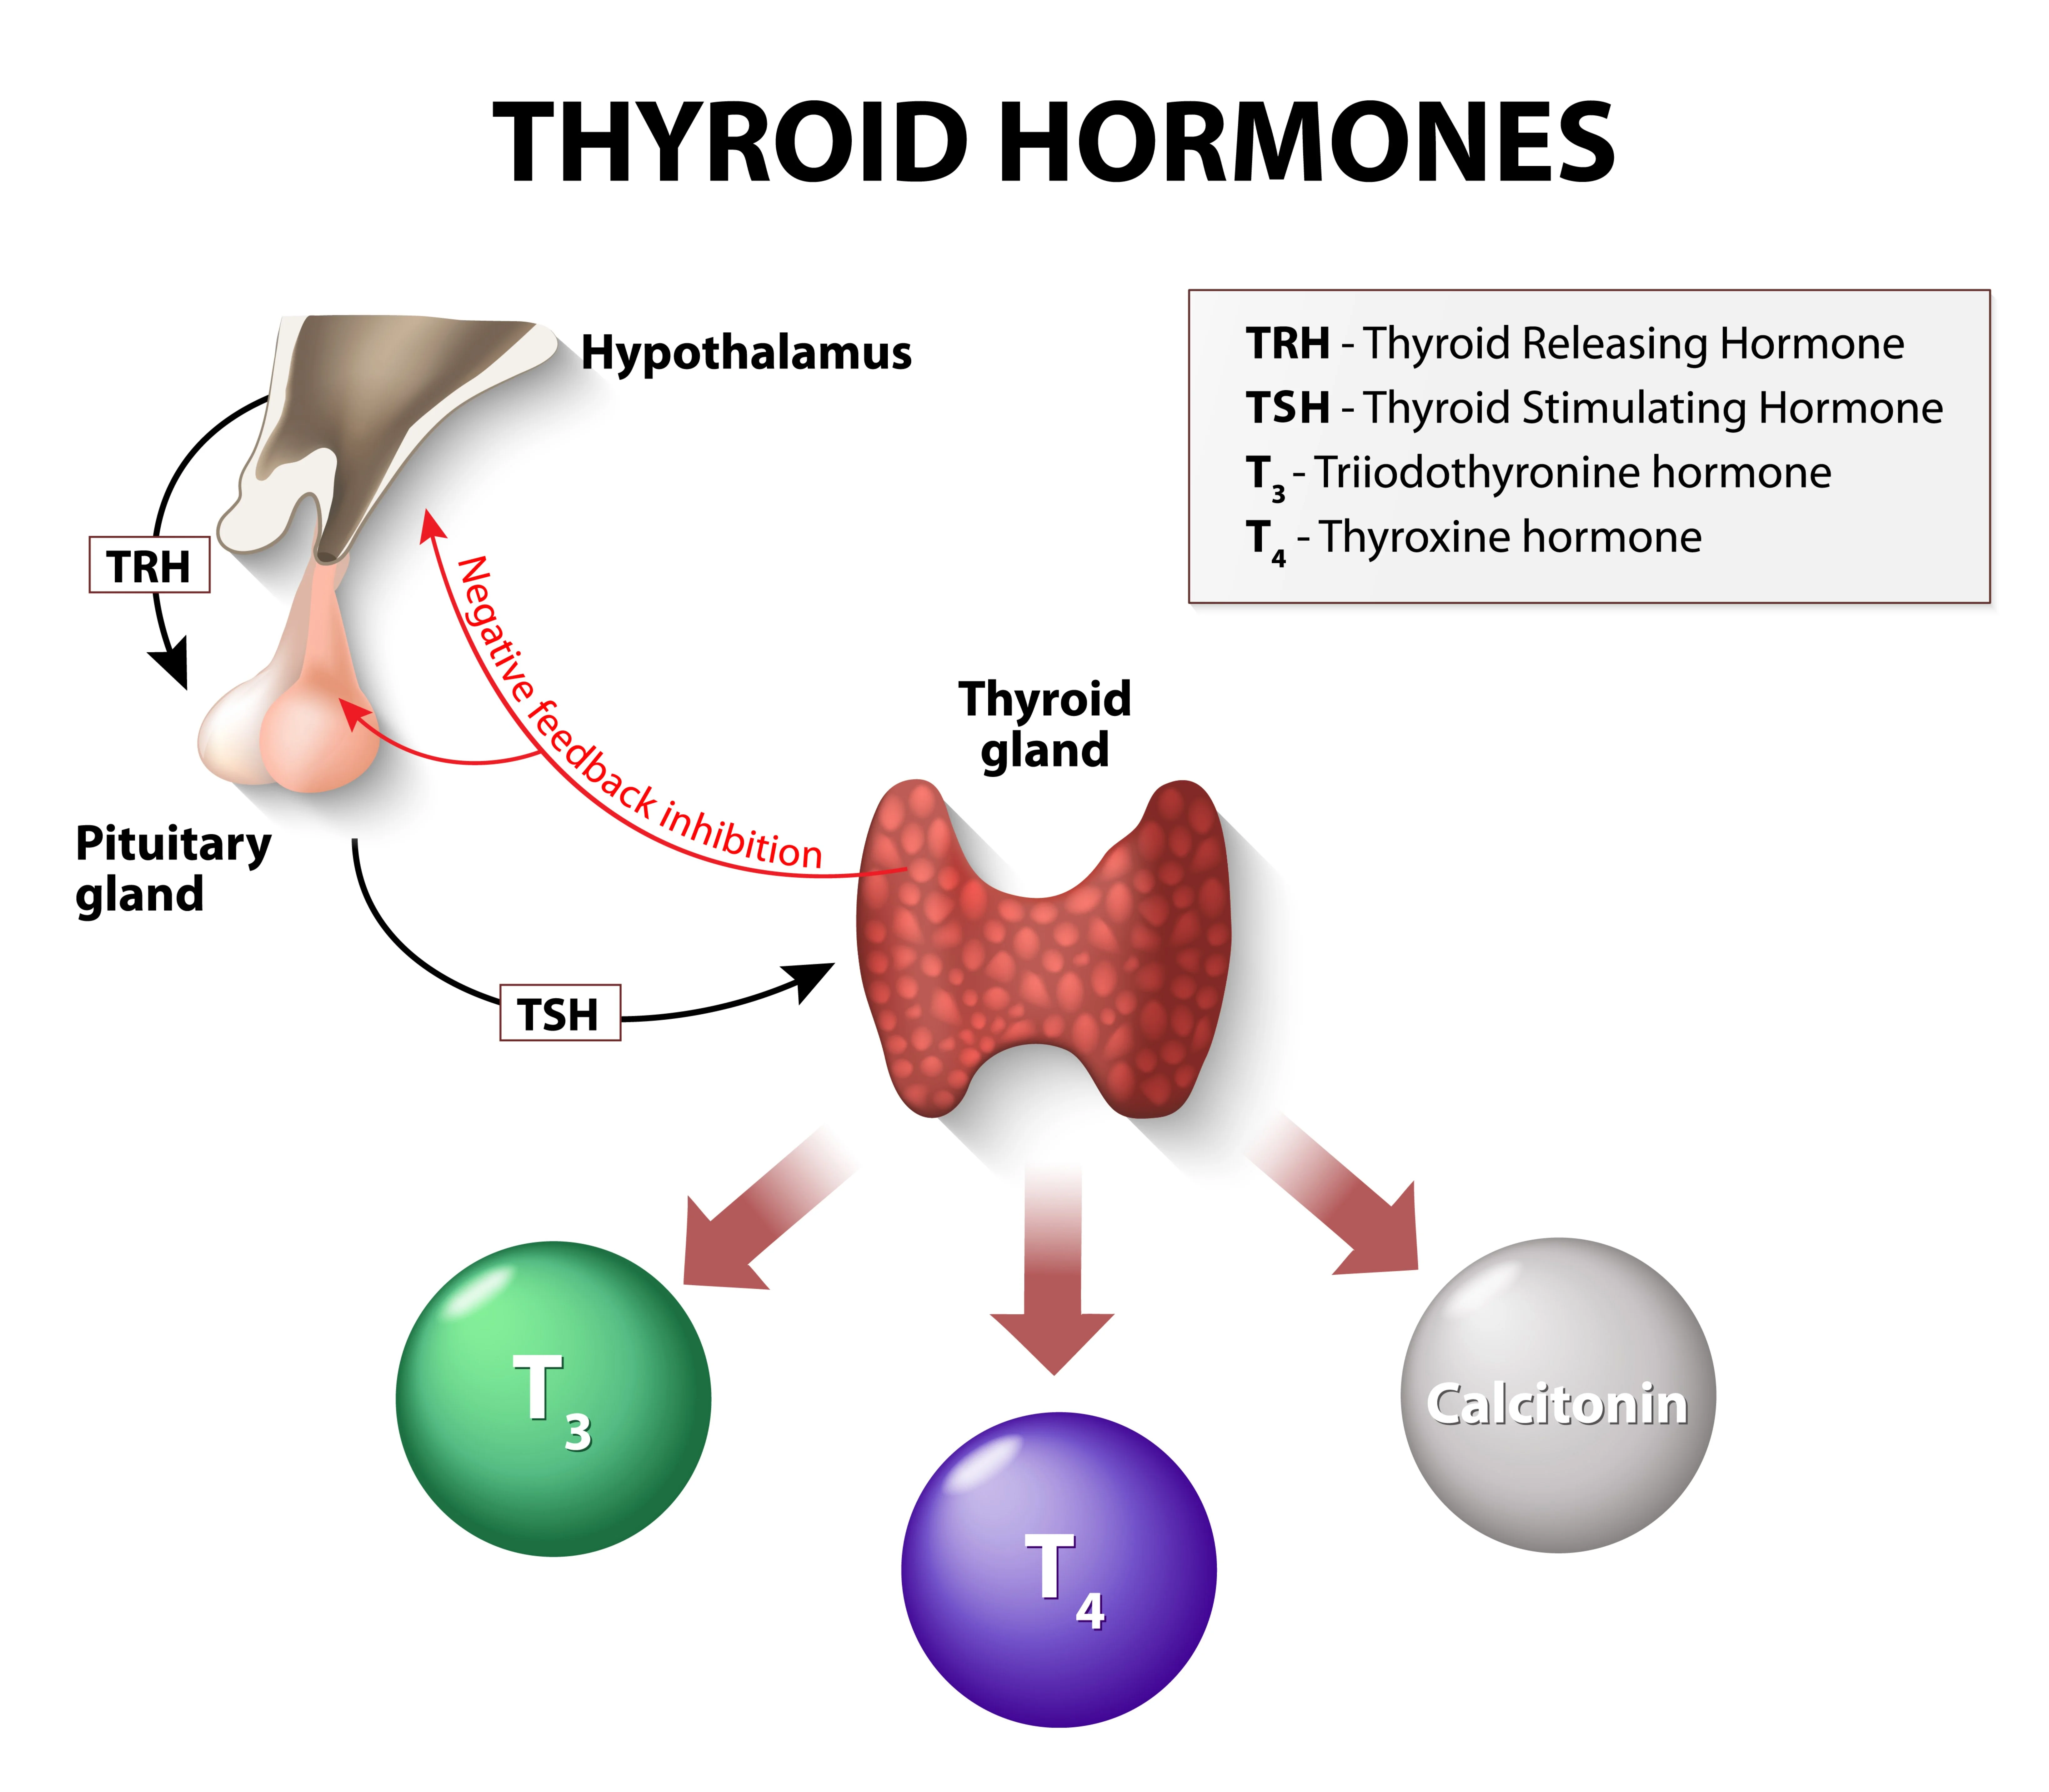 Die Schilddrüse ist ein schmetterlingsförmiges Organ an der Vorderseite des Halses, das zwei Arten von Hormonen ausscheidet: Trijodthyronin (T3) und Thyroxin (T4). Diese Hormone regulieren den Stoffwechsel des Körpers, der die Nahrung in Energie umwandelt. Die Schilddrüse wird durch das schilddrüsenstimulierende Hormon (TSH) gesteuert, das von der Hirnanhangsdrüse im Gehirn produziert wird.